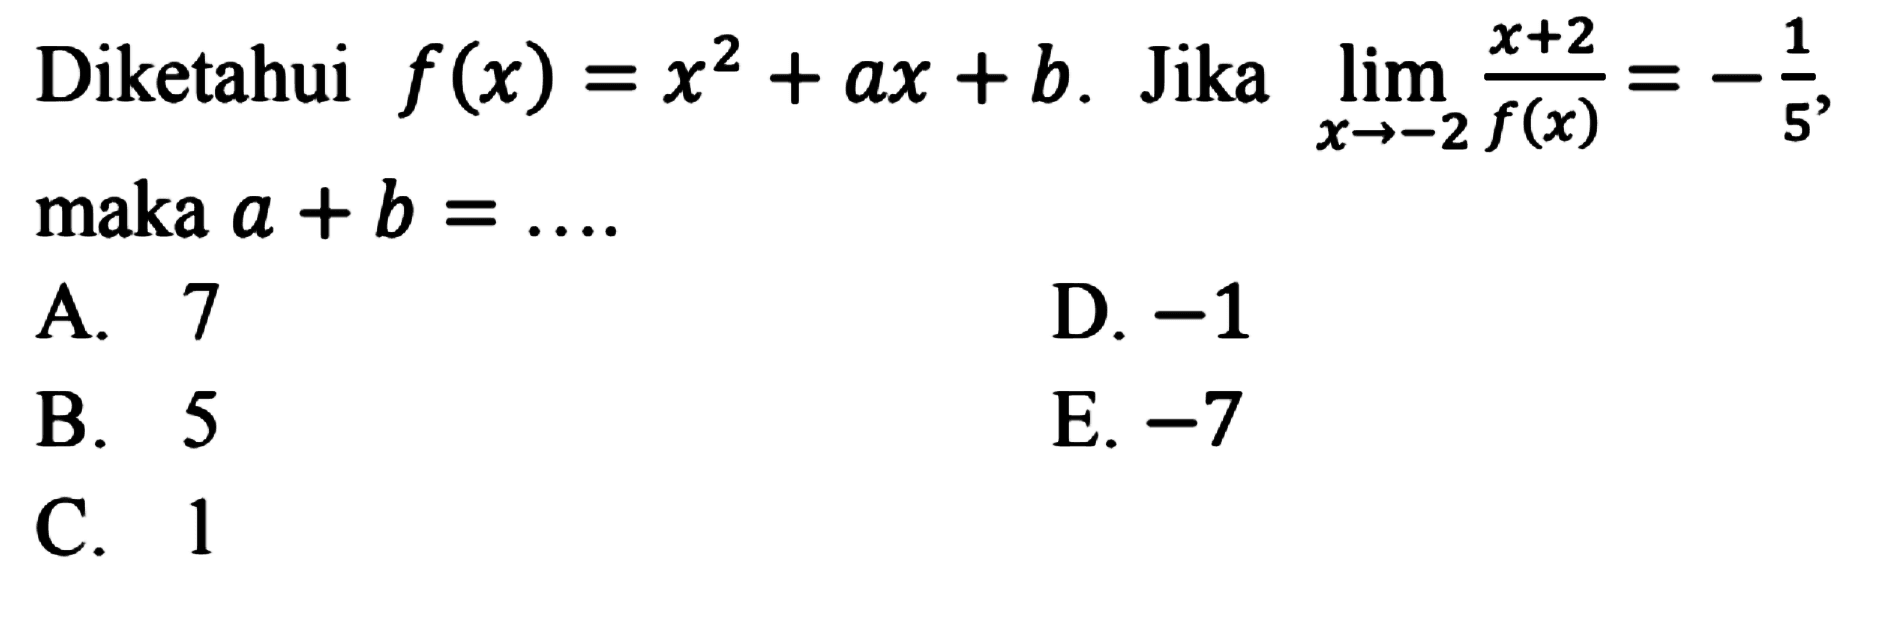 Diketahui  f(x)=x^2+a x+b .  Jika  lim  x ->-2 (x+2)/f(x)=-1/5 , maka  a+b=... 